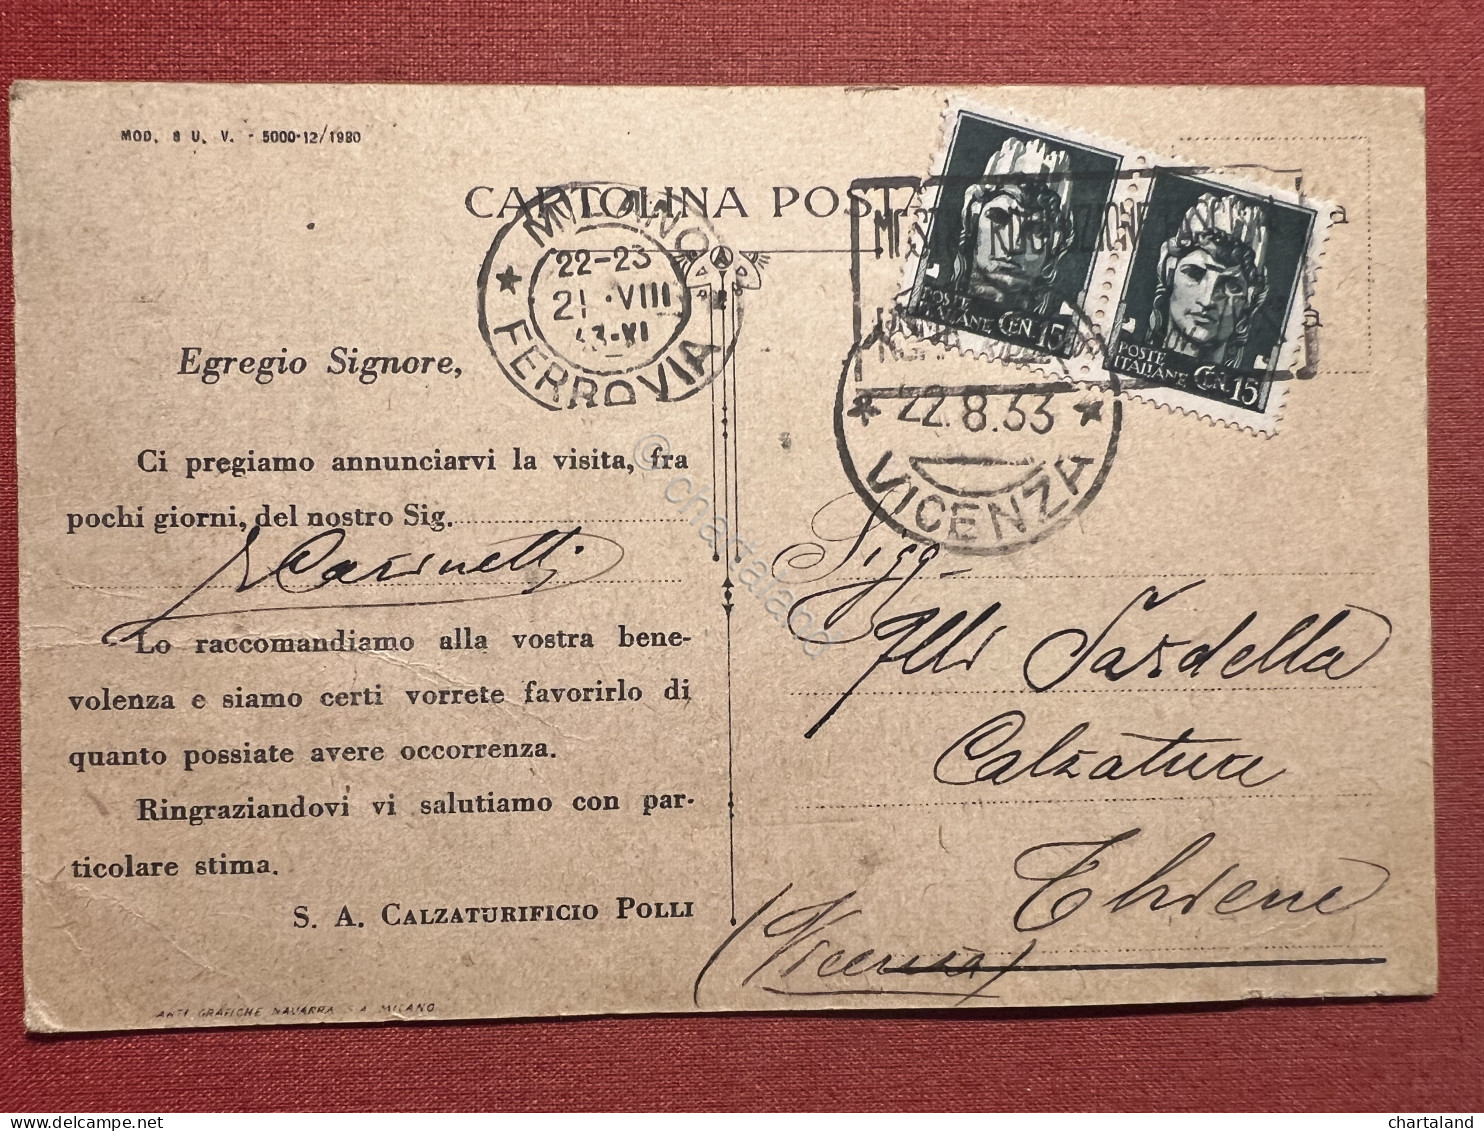 Cartolina Pubblicitaria - Ideal - Società Calzaturificio Pozzi, Milano - 1933 - Reclame